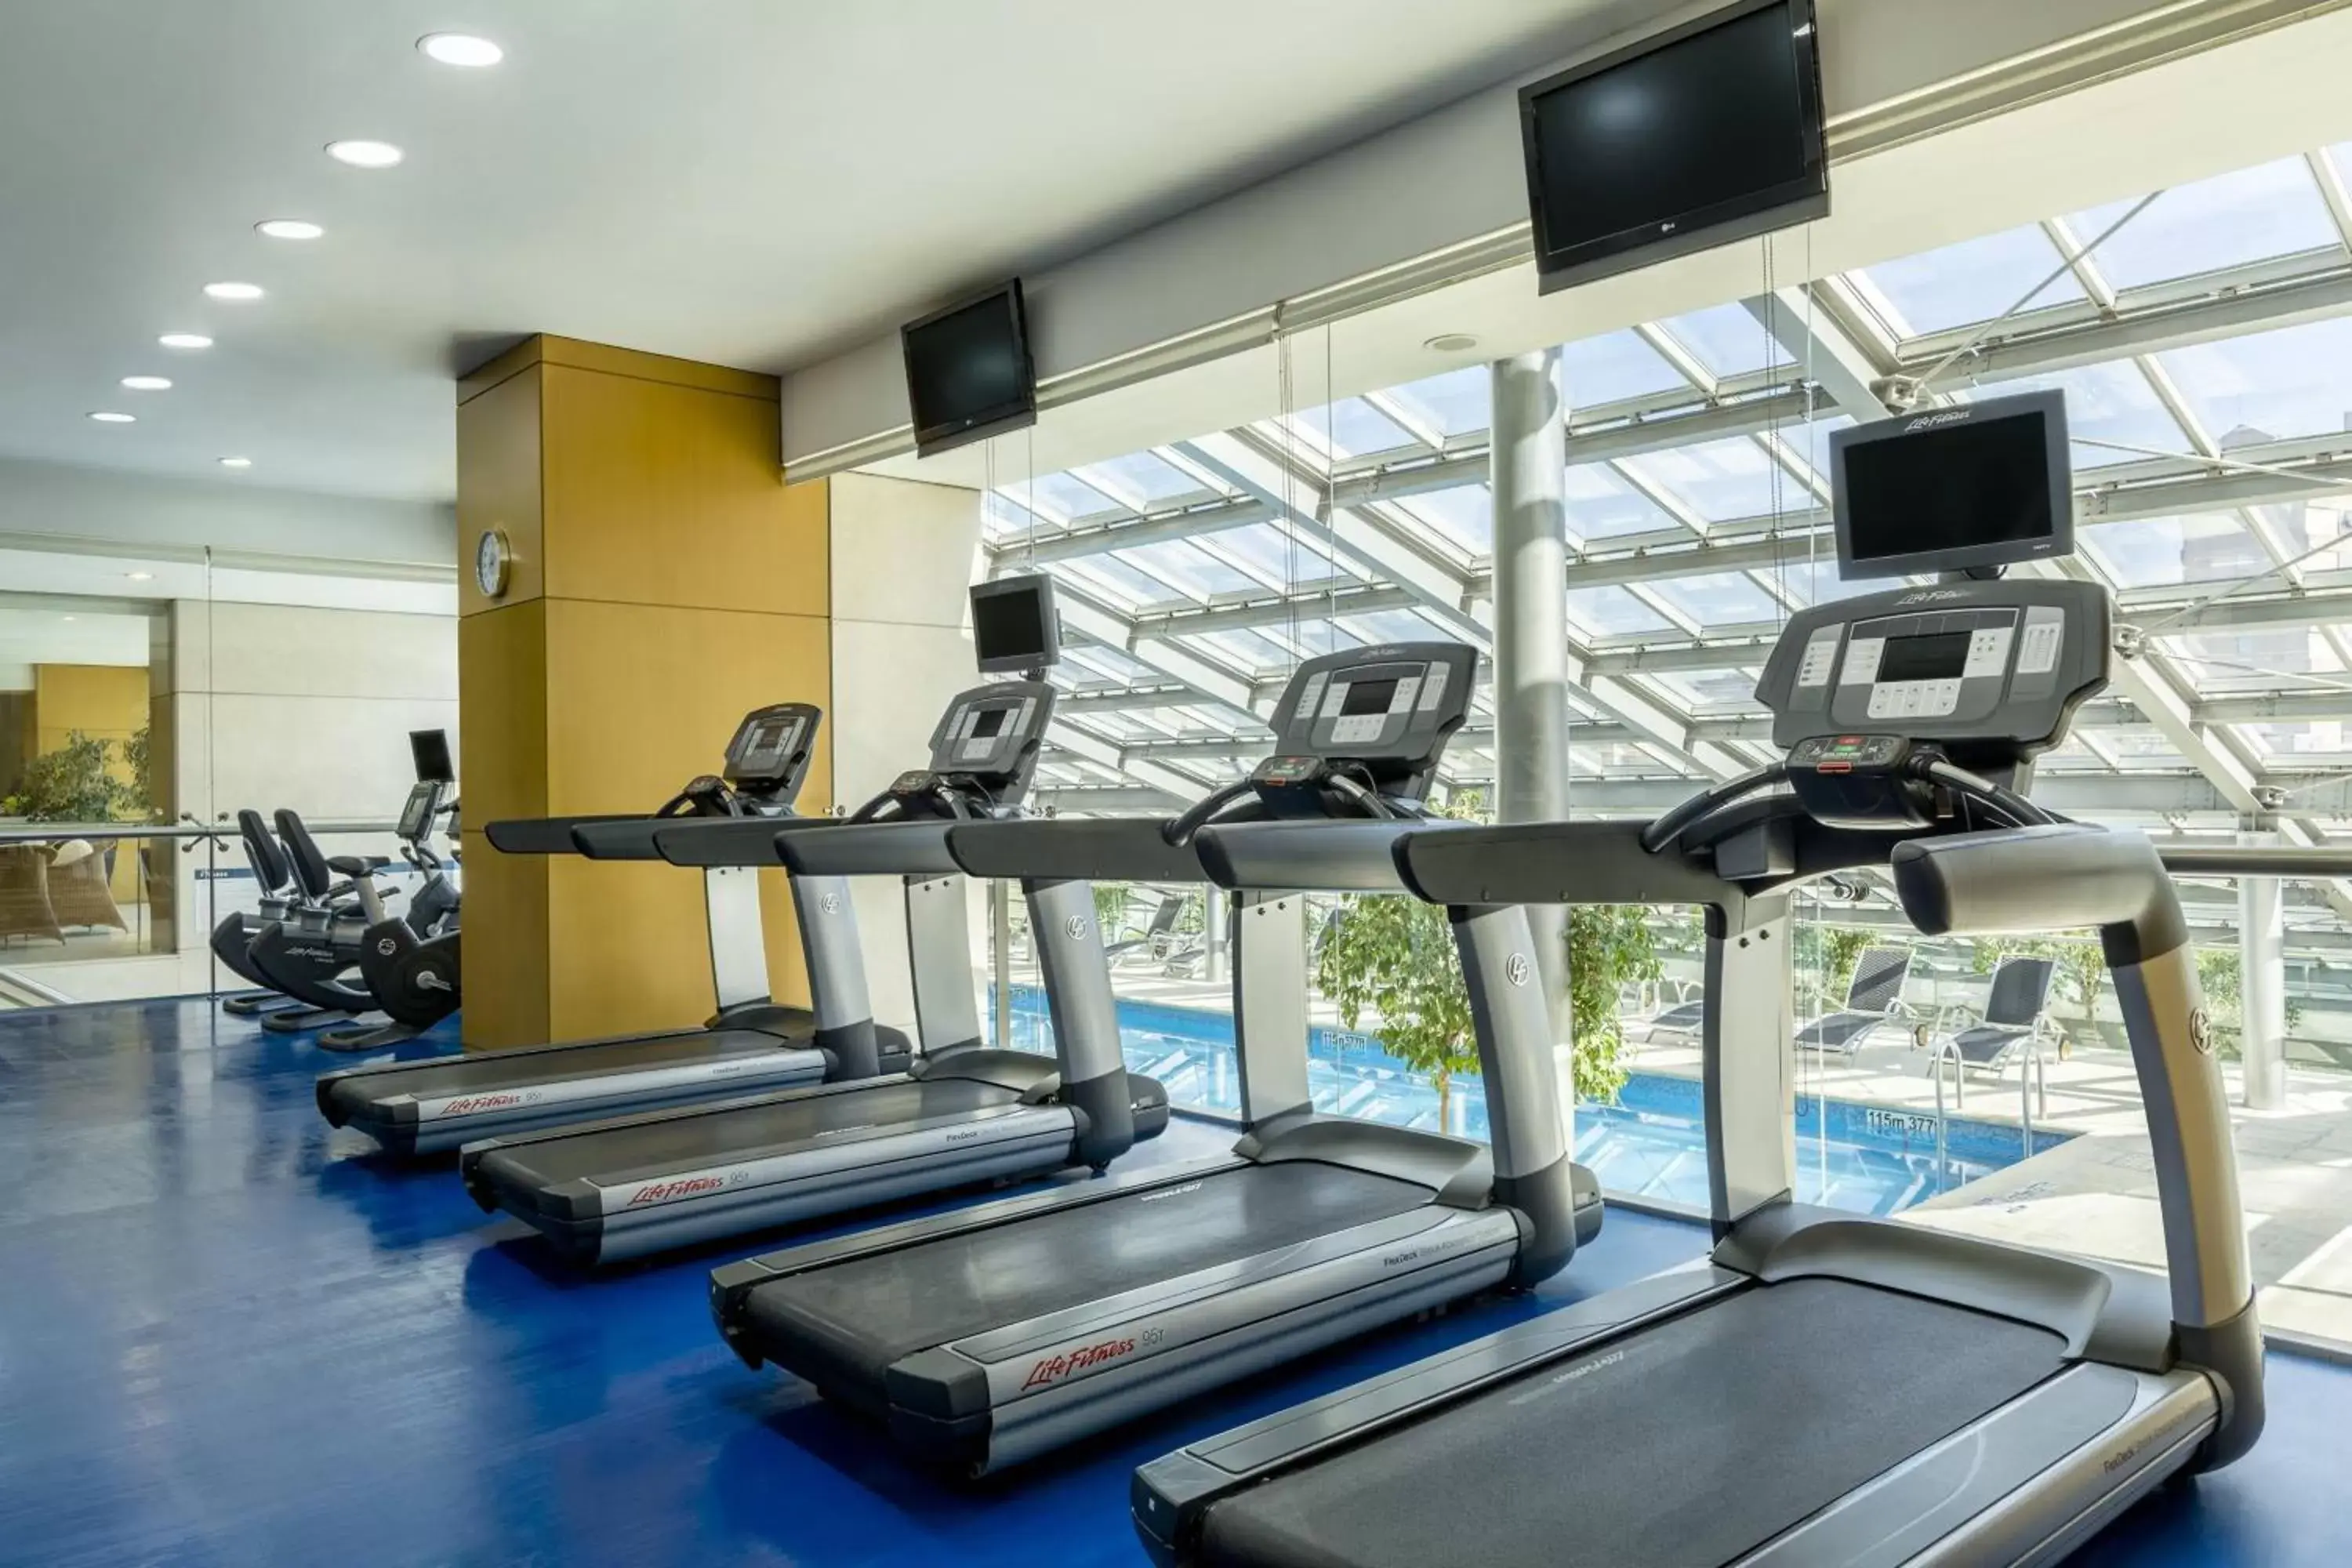 Fitness centre/facilities, Fitness Center/Facilities in Sheraton Mendoza Hotel